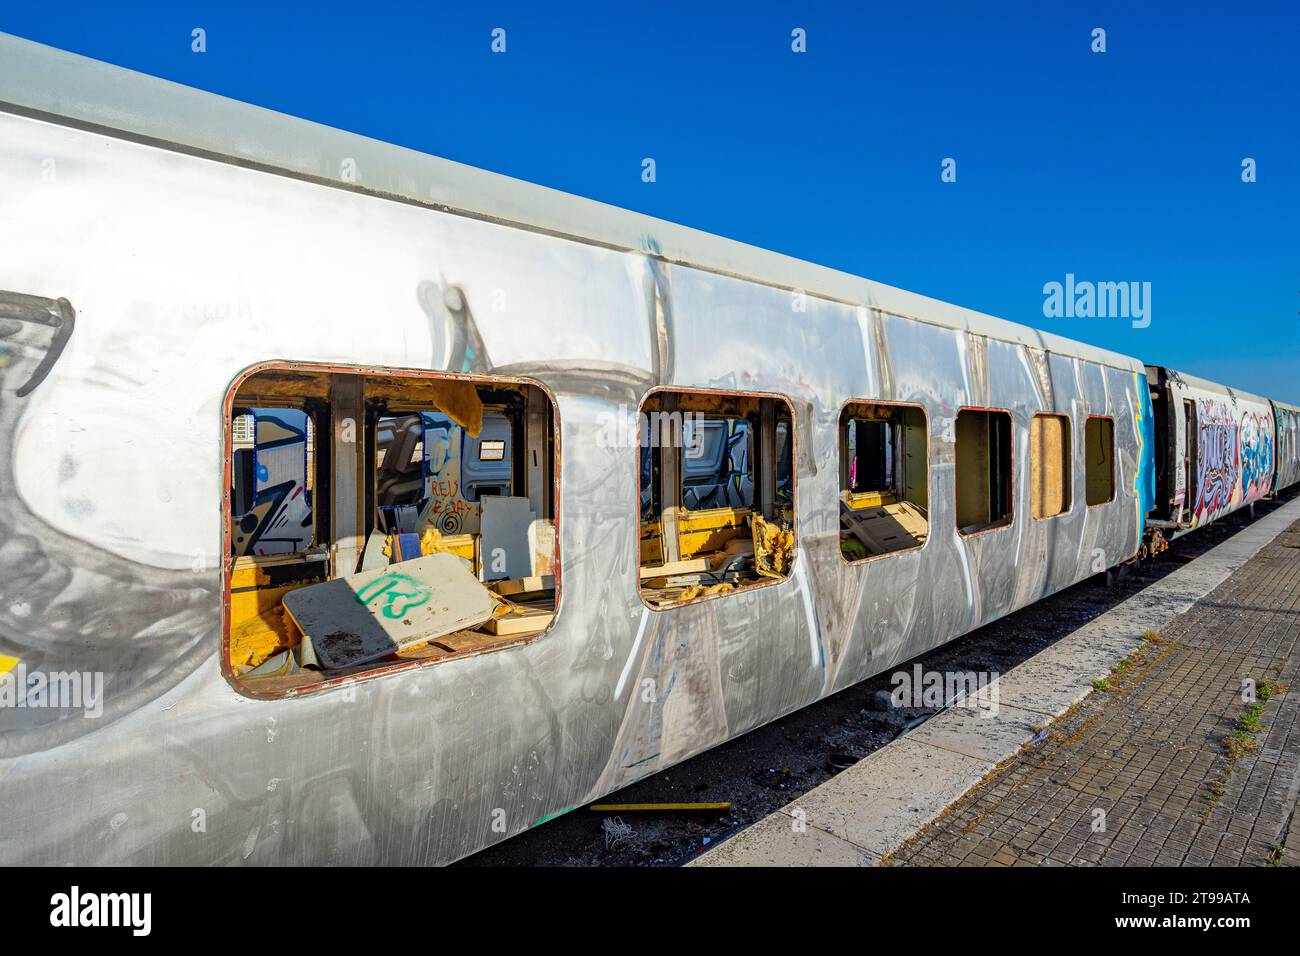 Vagoni ferroviari vandalizzati con dipinti senza espressione artistica, solo con disegni con intento distruttivo, installati nella vecchia statio ferroviaria Foto Stock